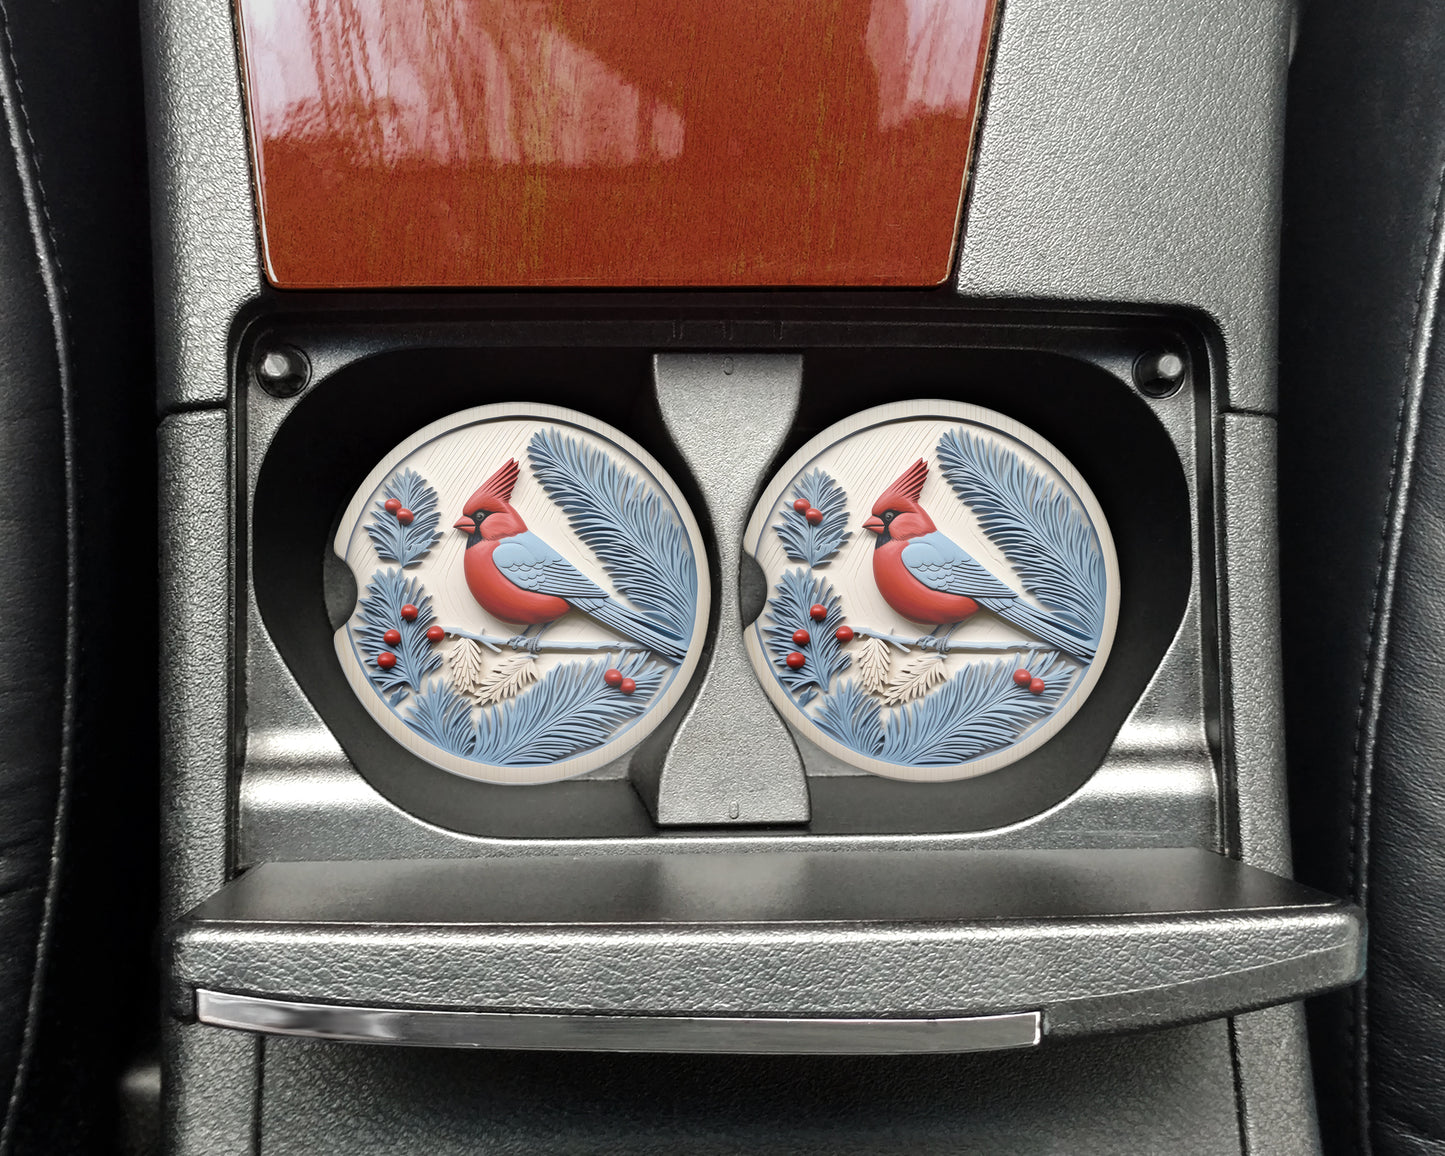 a close up of a car's emblem with a bird on it